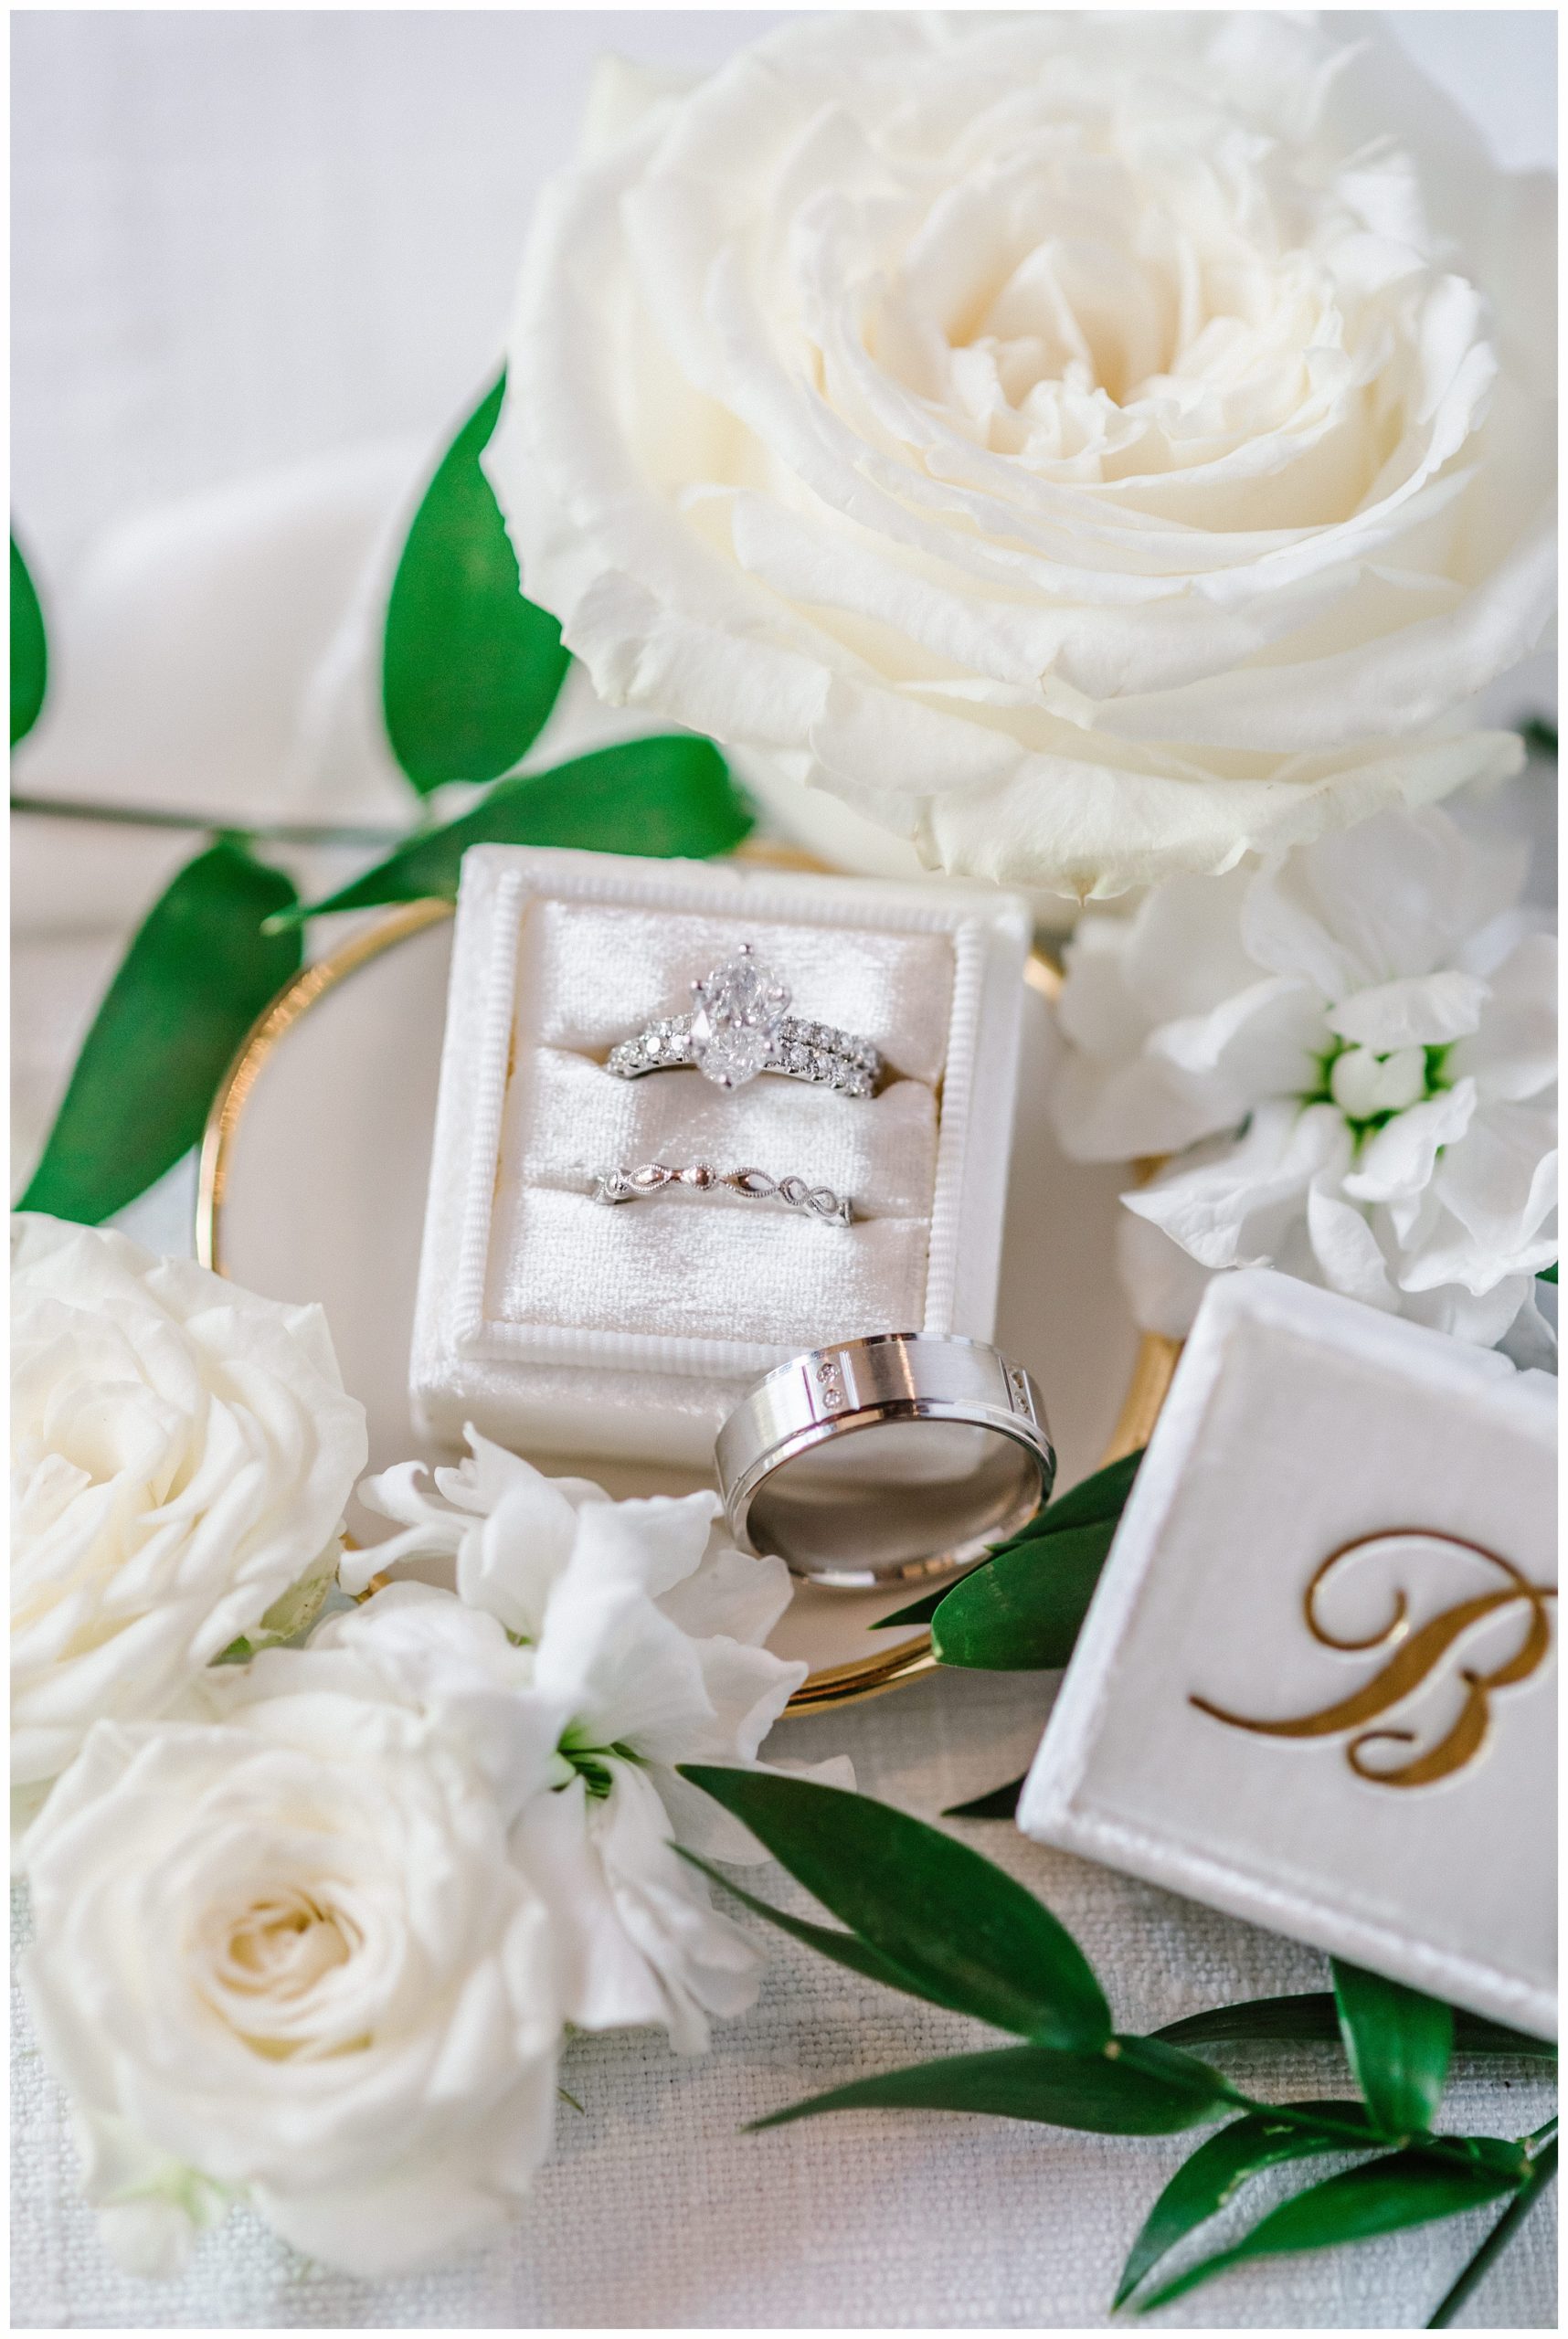 Classic Wedding Rings in Ivory Velvet Ring Box